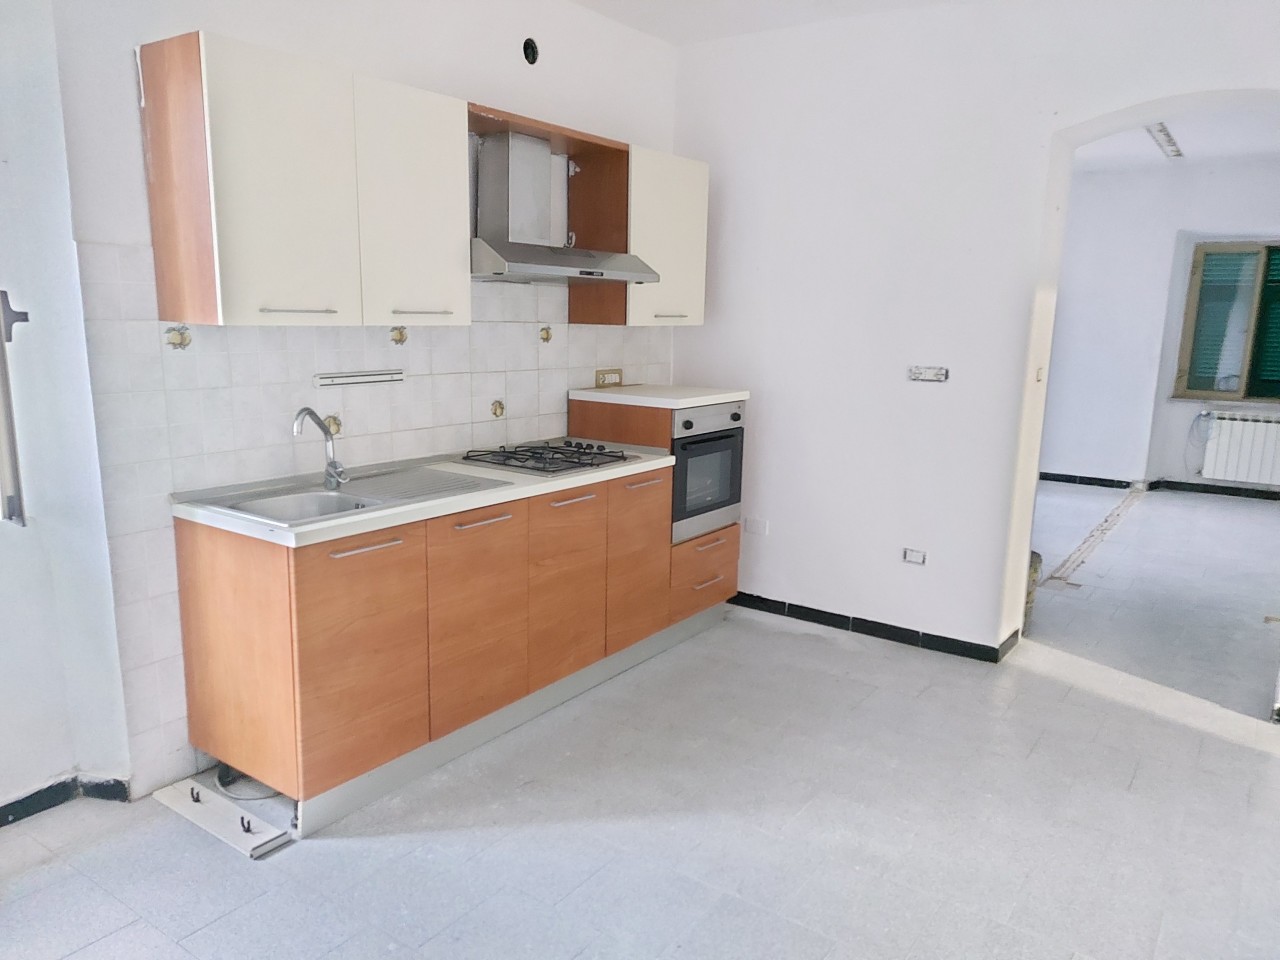 Appartamento in vendita a Castelnuovo Magra, 2 locali, prezzo € 65.000 | PortaleAgenzieImmobiliari.it